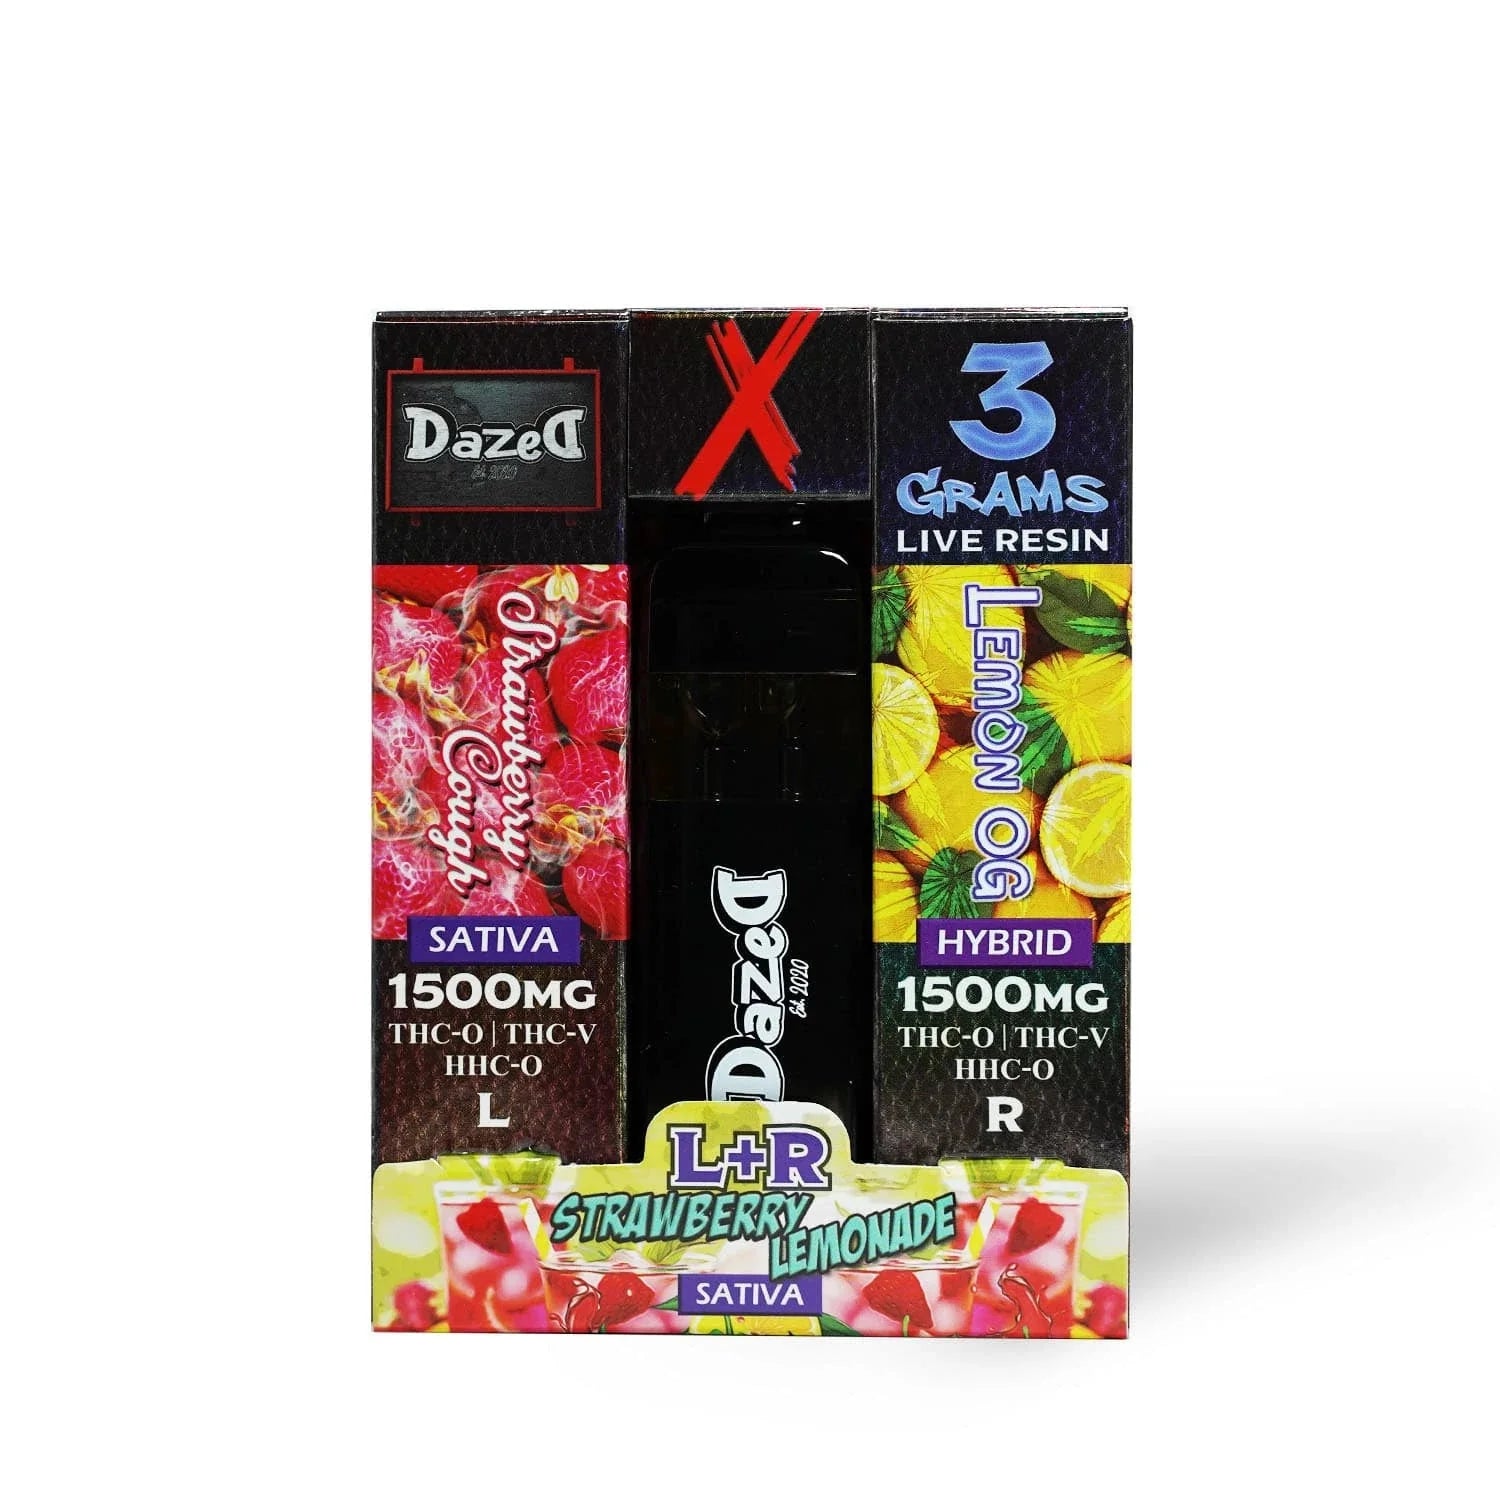 DazeD8 OG Blenz Cross Disposable Vape Pens (3g) Best Price